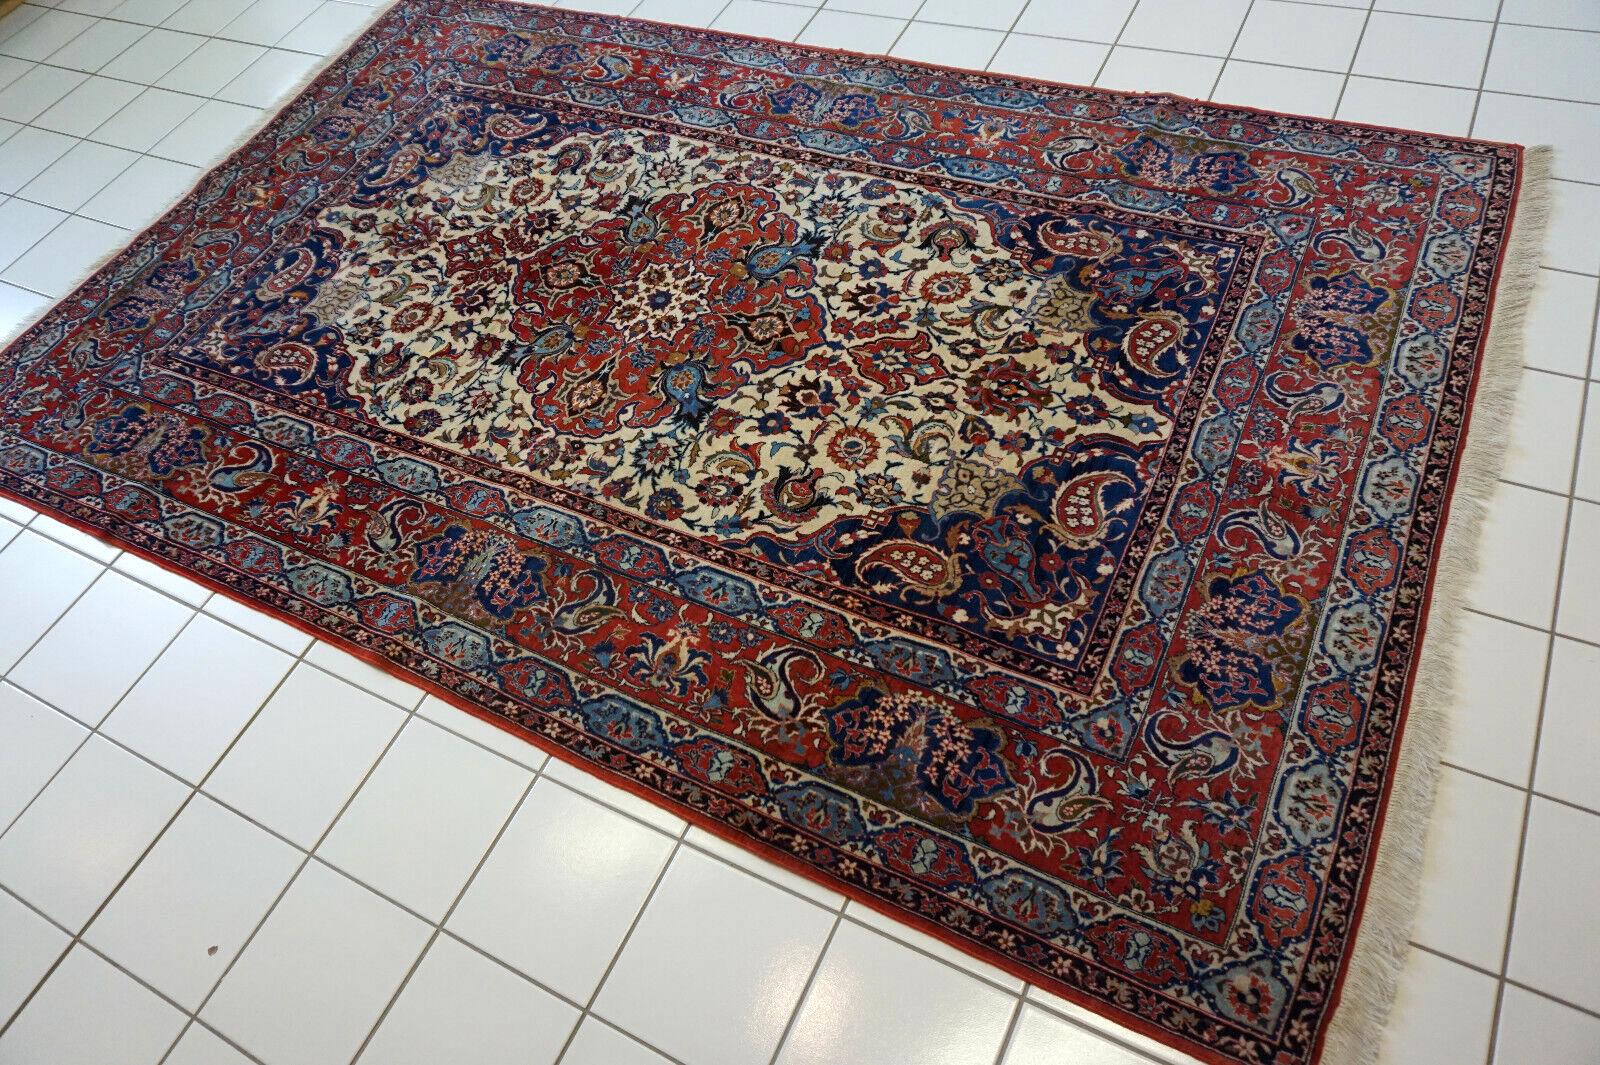 Dieser handgefertigte antike Isfahan-Teppich im persischen Stil ist ein bemerkenswertes Stück Kunstfertigkeit aus den 1920er Jahren. Lassen Sie mich das komplizierte Design und die fesselnden Farben anhand des Bildes beschreiben:

Design/One